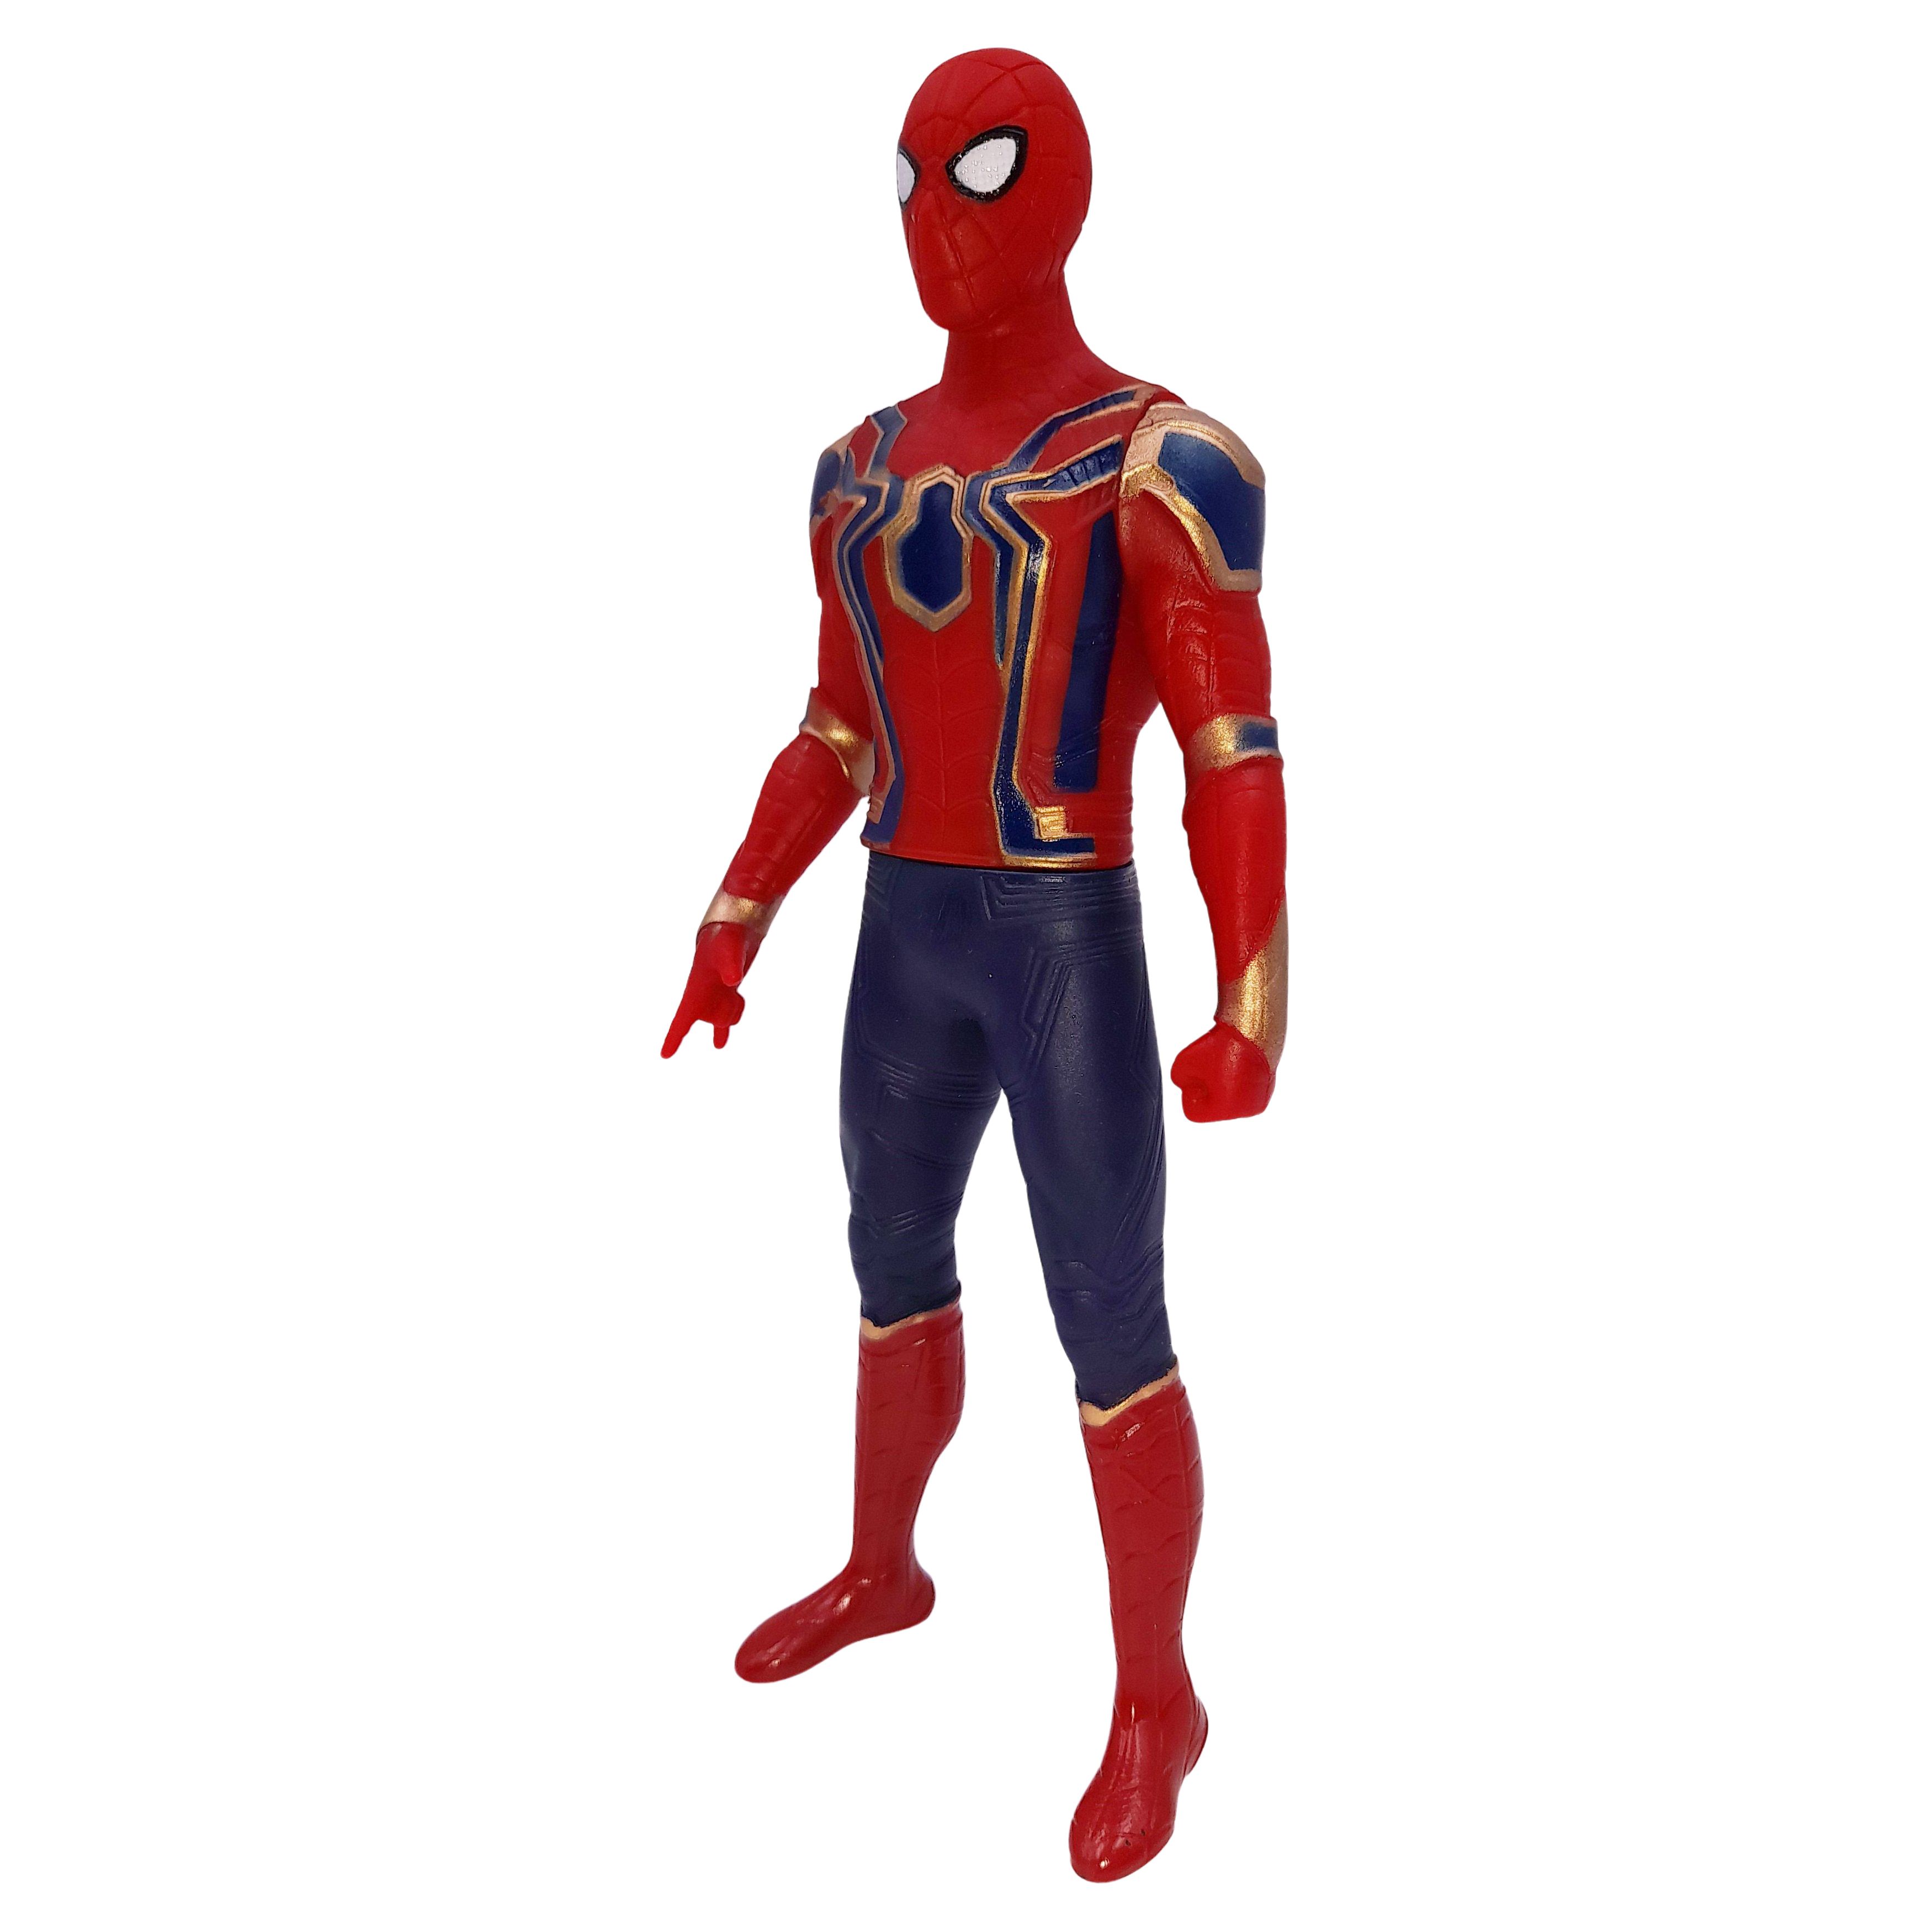 Costum pentru copii Iron Spiderman, rosu, 7-9 ani, figurina inclusa